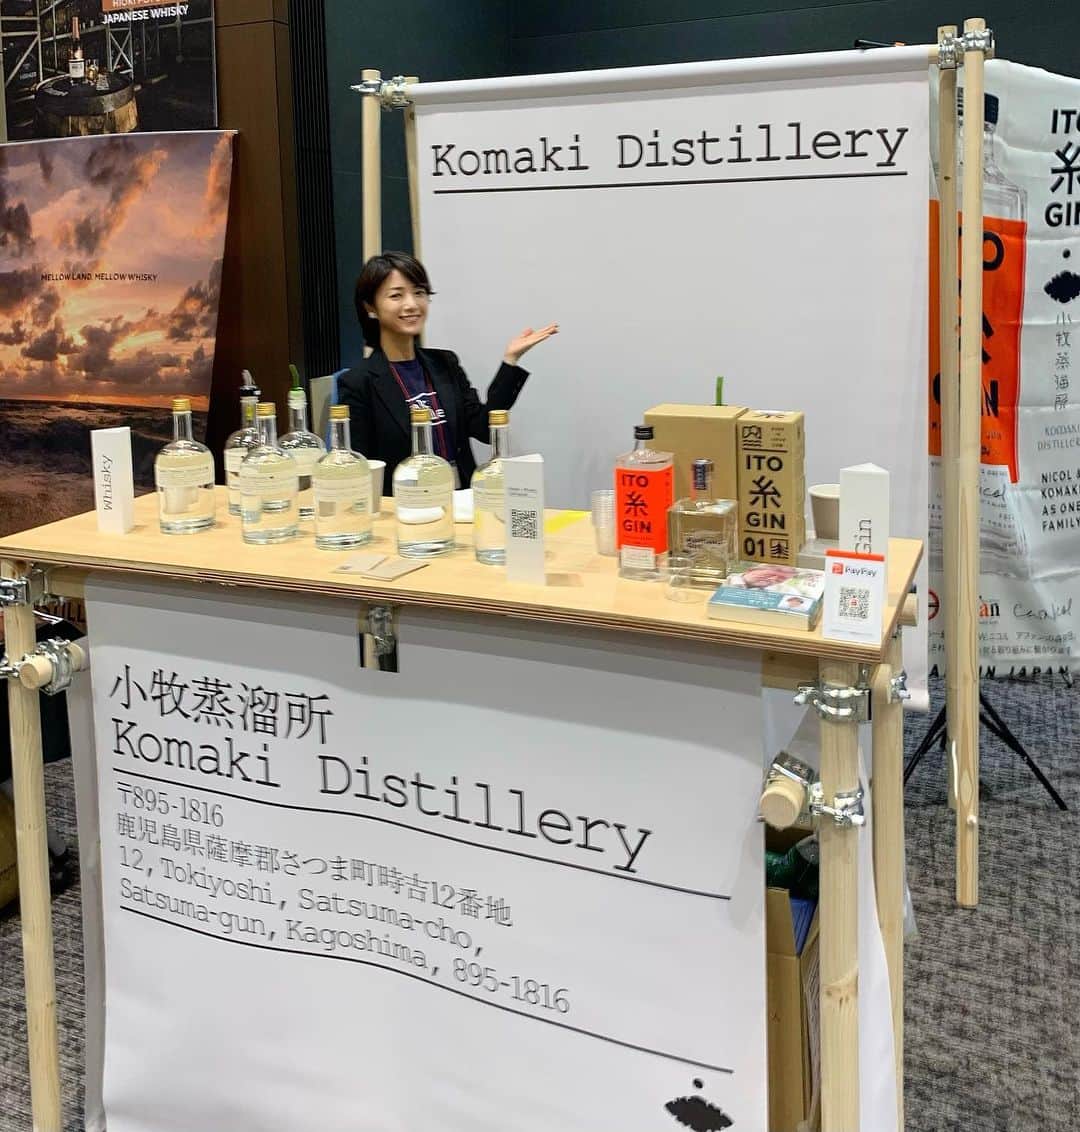 小川夏果のインスタグラム：「【Komaki distillery 小牧蒸留所】ウイスキー販売のお手伝い🤗まだニューポットの状態でウイスキーの販売までは2年くらい？かかりそうですが、たくさんの方に知ってもらうため、色んなウイスキーイベントに参加しています。新商品ジン🍸は売ってるよ！詳しくはお店のECサイトを見てね。 『小牧蒸留所』は1909年に鹿児島の地で創業した小牧醸造（芋焼酎、たくさん有名な銘柄があるよ）。世紀をまたいで受け継いだ正統な技に加え、時代ごとの食のトレンドやライフスタイルの変化を敏感に捉えながら、柔軟な感覚で常に新しいものづくりに挑戦しています。 酒蔵として先入観にとらわれず、境界を超えた新しいプロダクト開発...鹿児島の豊かな自然、本格焼酎づくりで培った蒸留技術を存分に生かしながら、今の時代を象徴する酒を開発する研究の場として「小牧蒸溜所」をオープンされましまた。 ちなみに小牧家は西暦1590年、北郷島津家の13人の武家衆家来の１人として、この薩摩の地に移り住んで来た。1909年、鹿児島県薩摩郡さつま町に本格焼酎製造業を創業し、今年115年目を迎えます。 薩摩焼酎の歴史はスコッチウィスキーの本場英国と常に密接かつ複雑な関係にあり、江戸末期、英国と戦争し敗戦、彼の国の偉大さに触れ蒸留技術の一端を持ち帰ってきたことから現在の本格焼酎技術に至り、1990年代には、本格焼酎の国内税率がスコッチウィスキーより安価という理由で英国を中心とするEU連合にWTOに提訴され敗訴、３度の増税を強いられ苦難をしいられた過去があります。それでも薩摩魂で世上を乗り越え、たくさんの方のご協力のもと本格焼酎ブームが到来し、今日に至る。 小牧さんの本格焼酎の製造、蒸留技術は世界をも凌駕する技術を持っています✨この技術を、世界の蒸留酒であるウィスキーに応用することで、小牧さんが造るジャパニーズウィスキーは更なる高みへと昇ります。 ウイスキーの知識ゼロだった私がニューポットから扱い出し、こんな素敵なお手伝いができて、少しずつ知るようになり、なんでも日々勉強だなぁと思い楽しんでます🥰   久しぶりに東京に来て、素敵な創作フレンチのお店【KINO】にも出会えました。新しく代々木にオープンされ、北海道から来られたご夫婦が創るお料理。オススメです。  ウイスキー好きな方、小牧蒸溜所のウィスキーの歴史を ともに造っていきましょう〜！  @komaki_whisky  #ウイスキー  #whisky  #komakiwhisky  #komakidistillery  #japanesewhisky  #ウイスキー好きな人と繋がりたい  #お酒 #鹿児島  #焼酎 #芋焼酎  #酒 #bar  #ウイスキー愛好家」